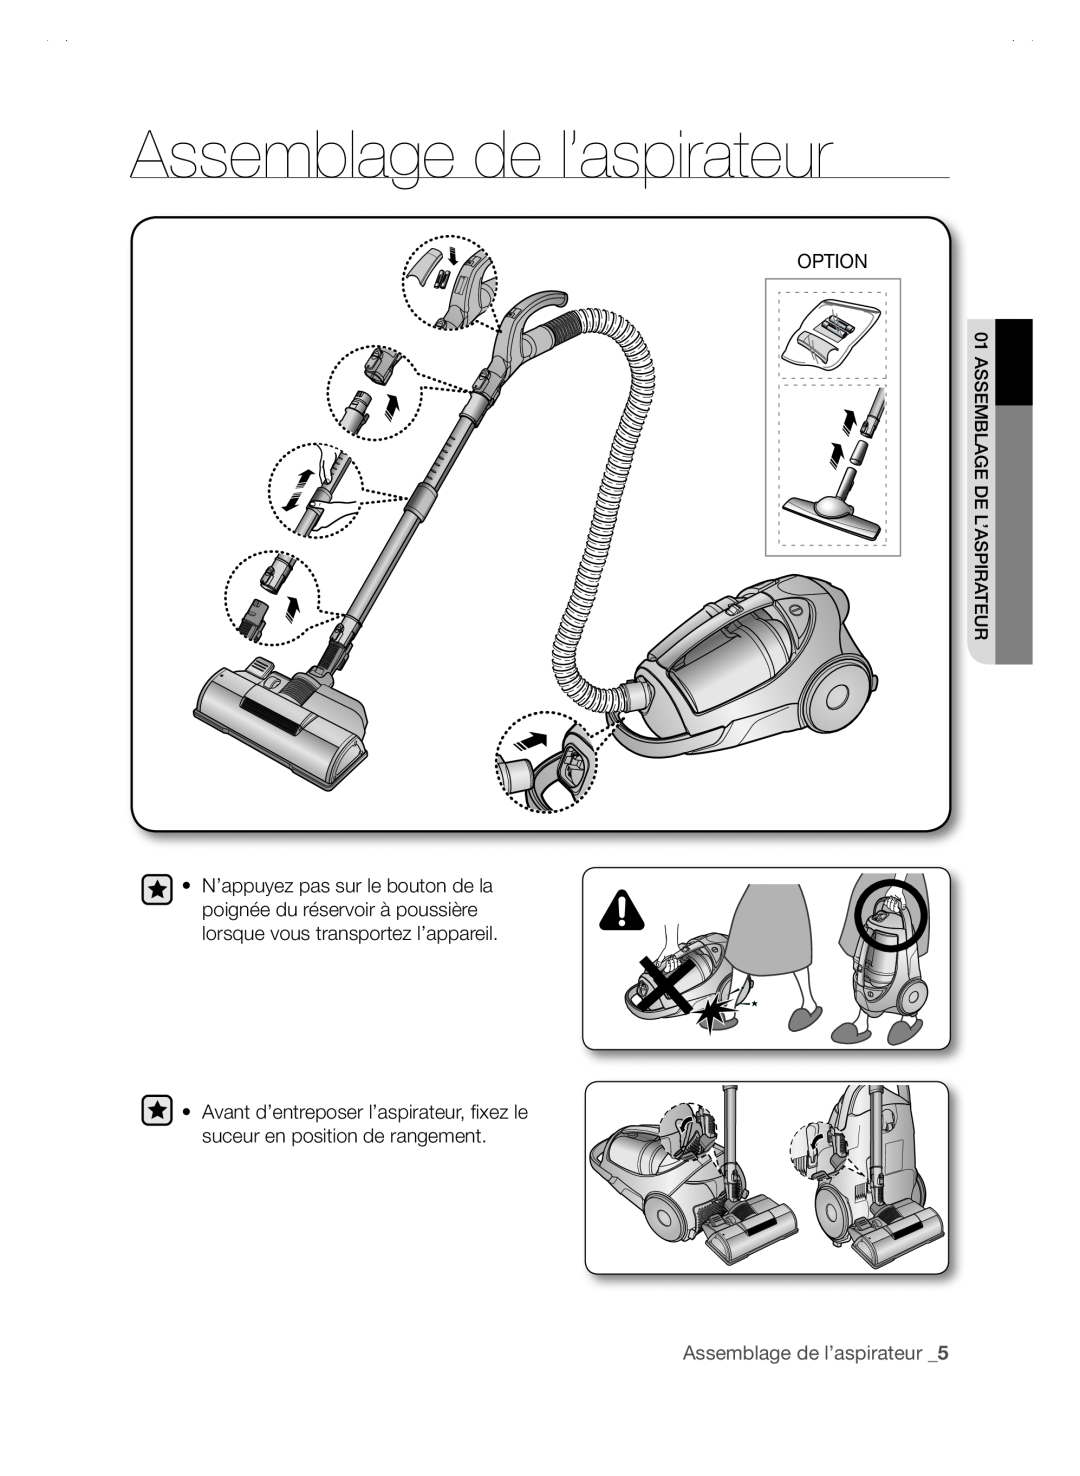 Samsung SC88P user manual Assemblage de l’aspirateur _5, Option 